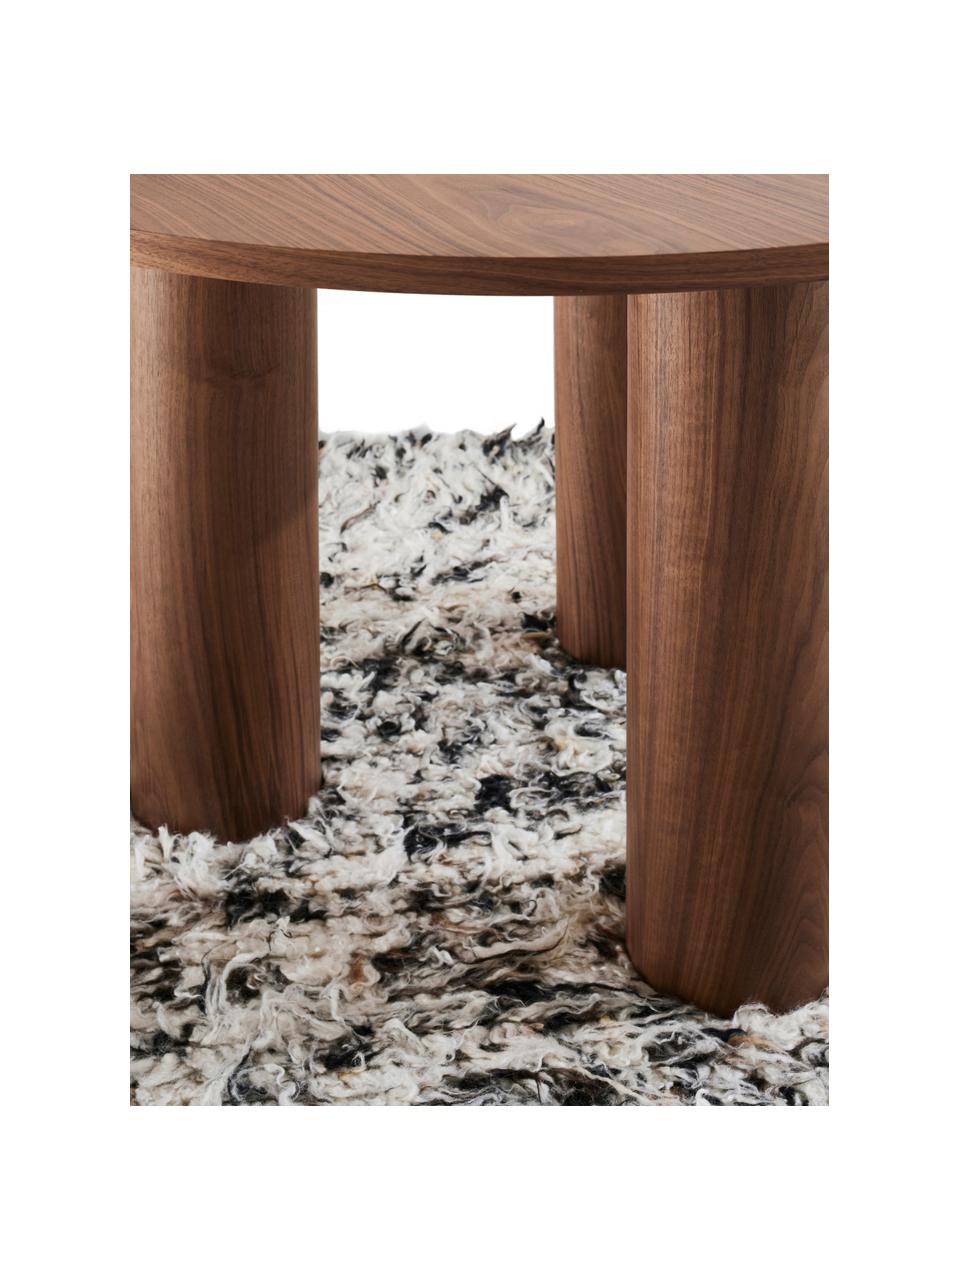 Kulatý stůl Colette, Ø 120 cm, MDF deska (dřevovláknitá deska střední hustoty) s dýhou z ořechu, certifikace FSC, Ořechové dřevo, Ø 120 cm, V 72 cm